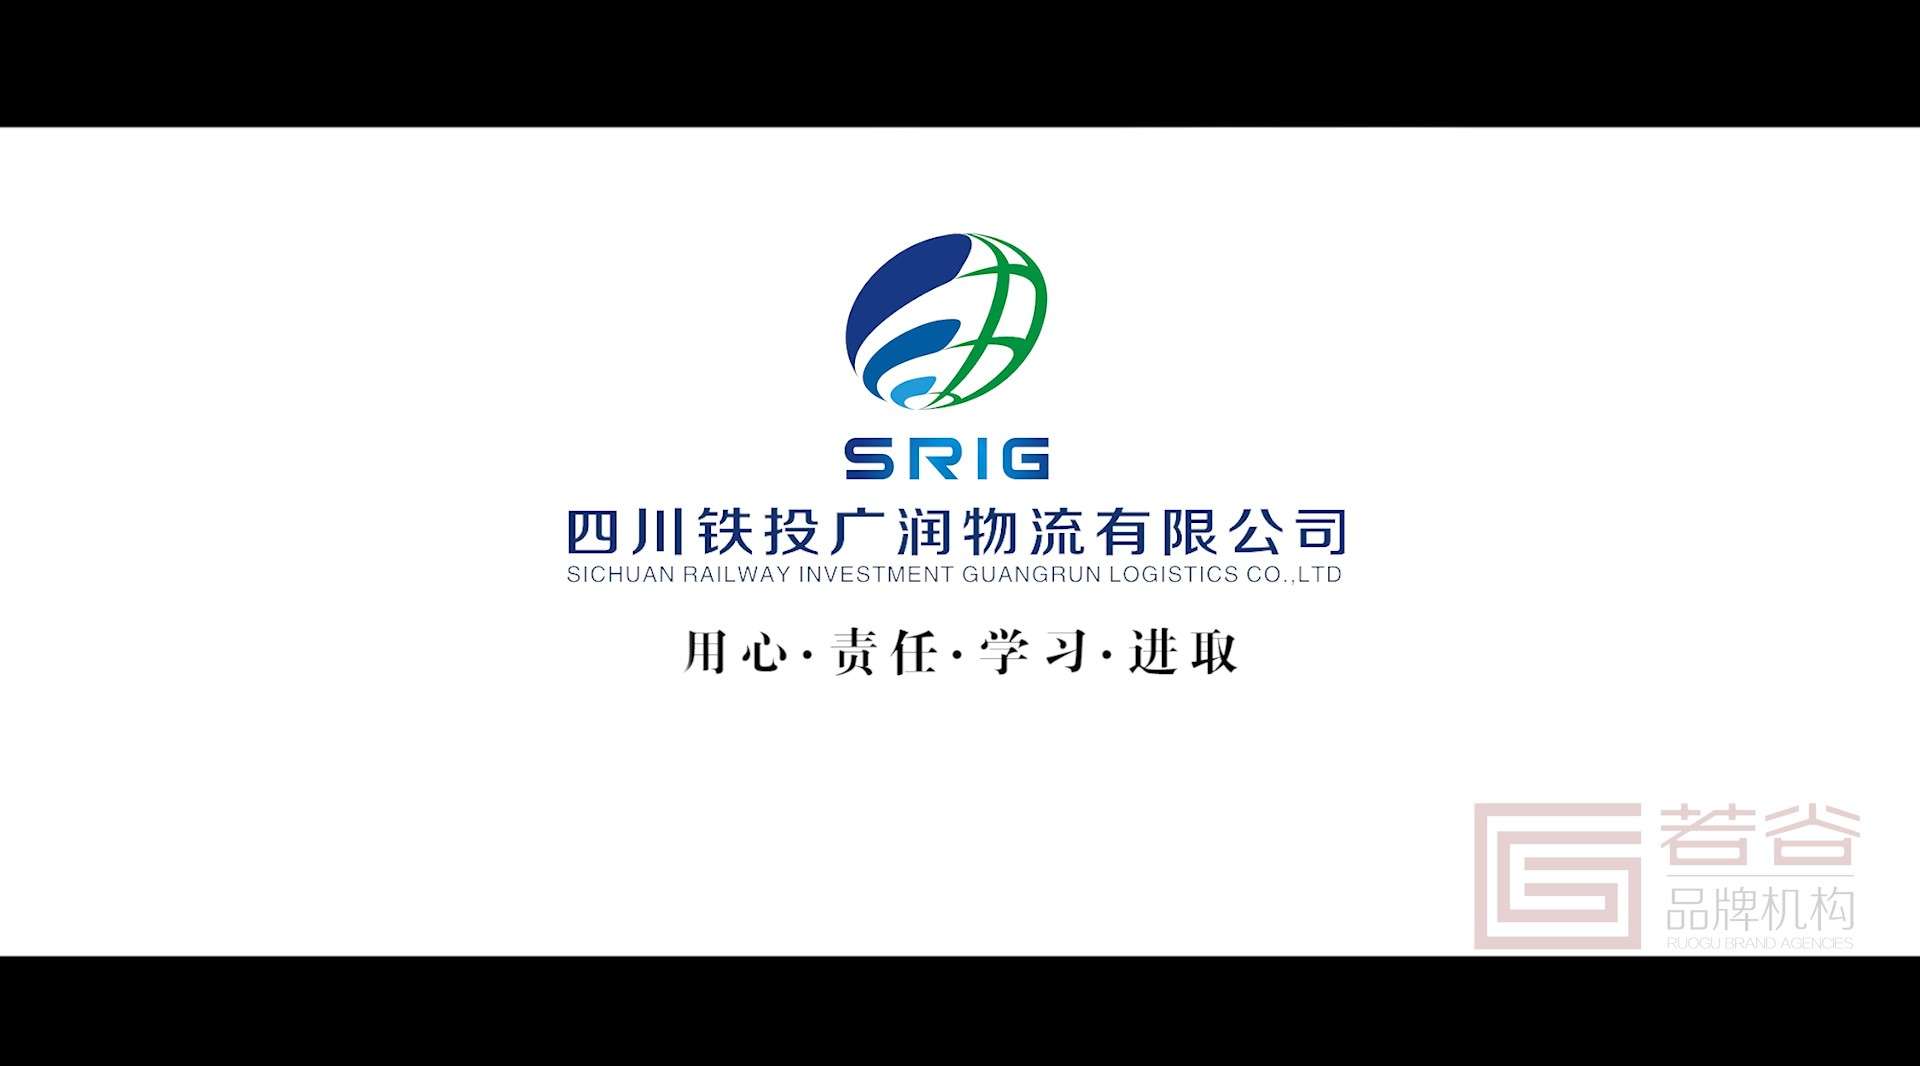 四川铁投集团广润物流公司宣传片2分钟版